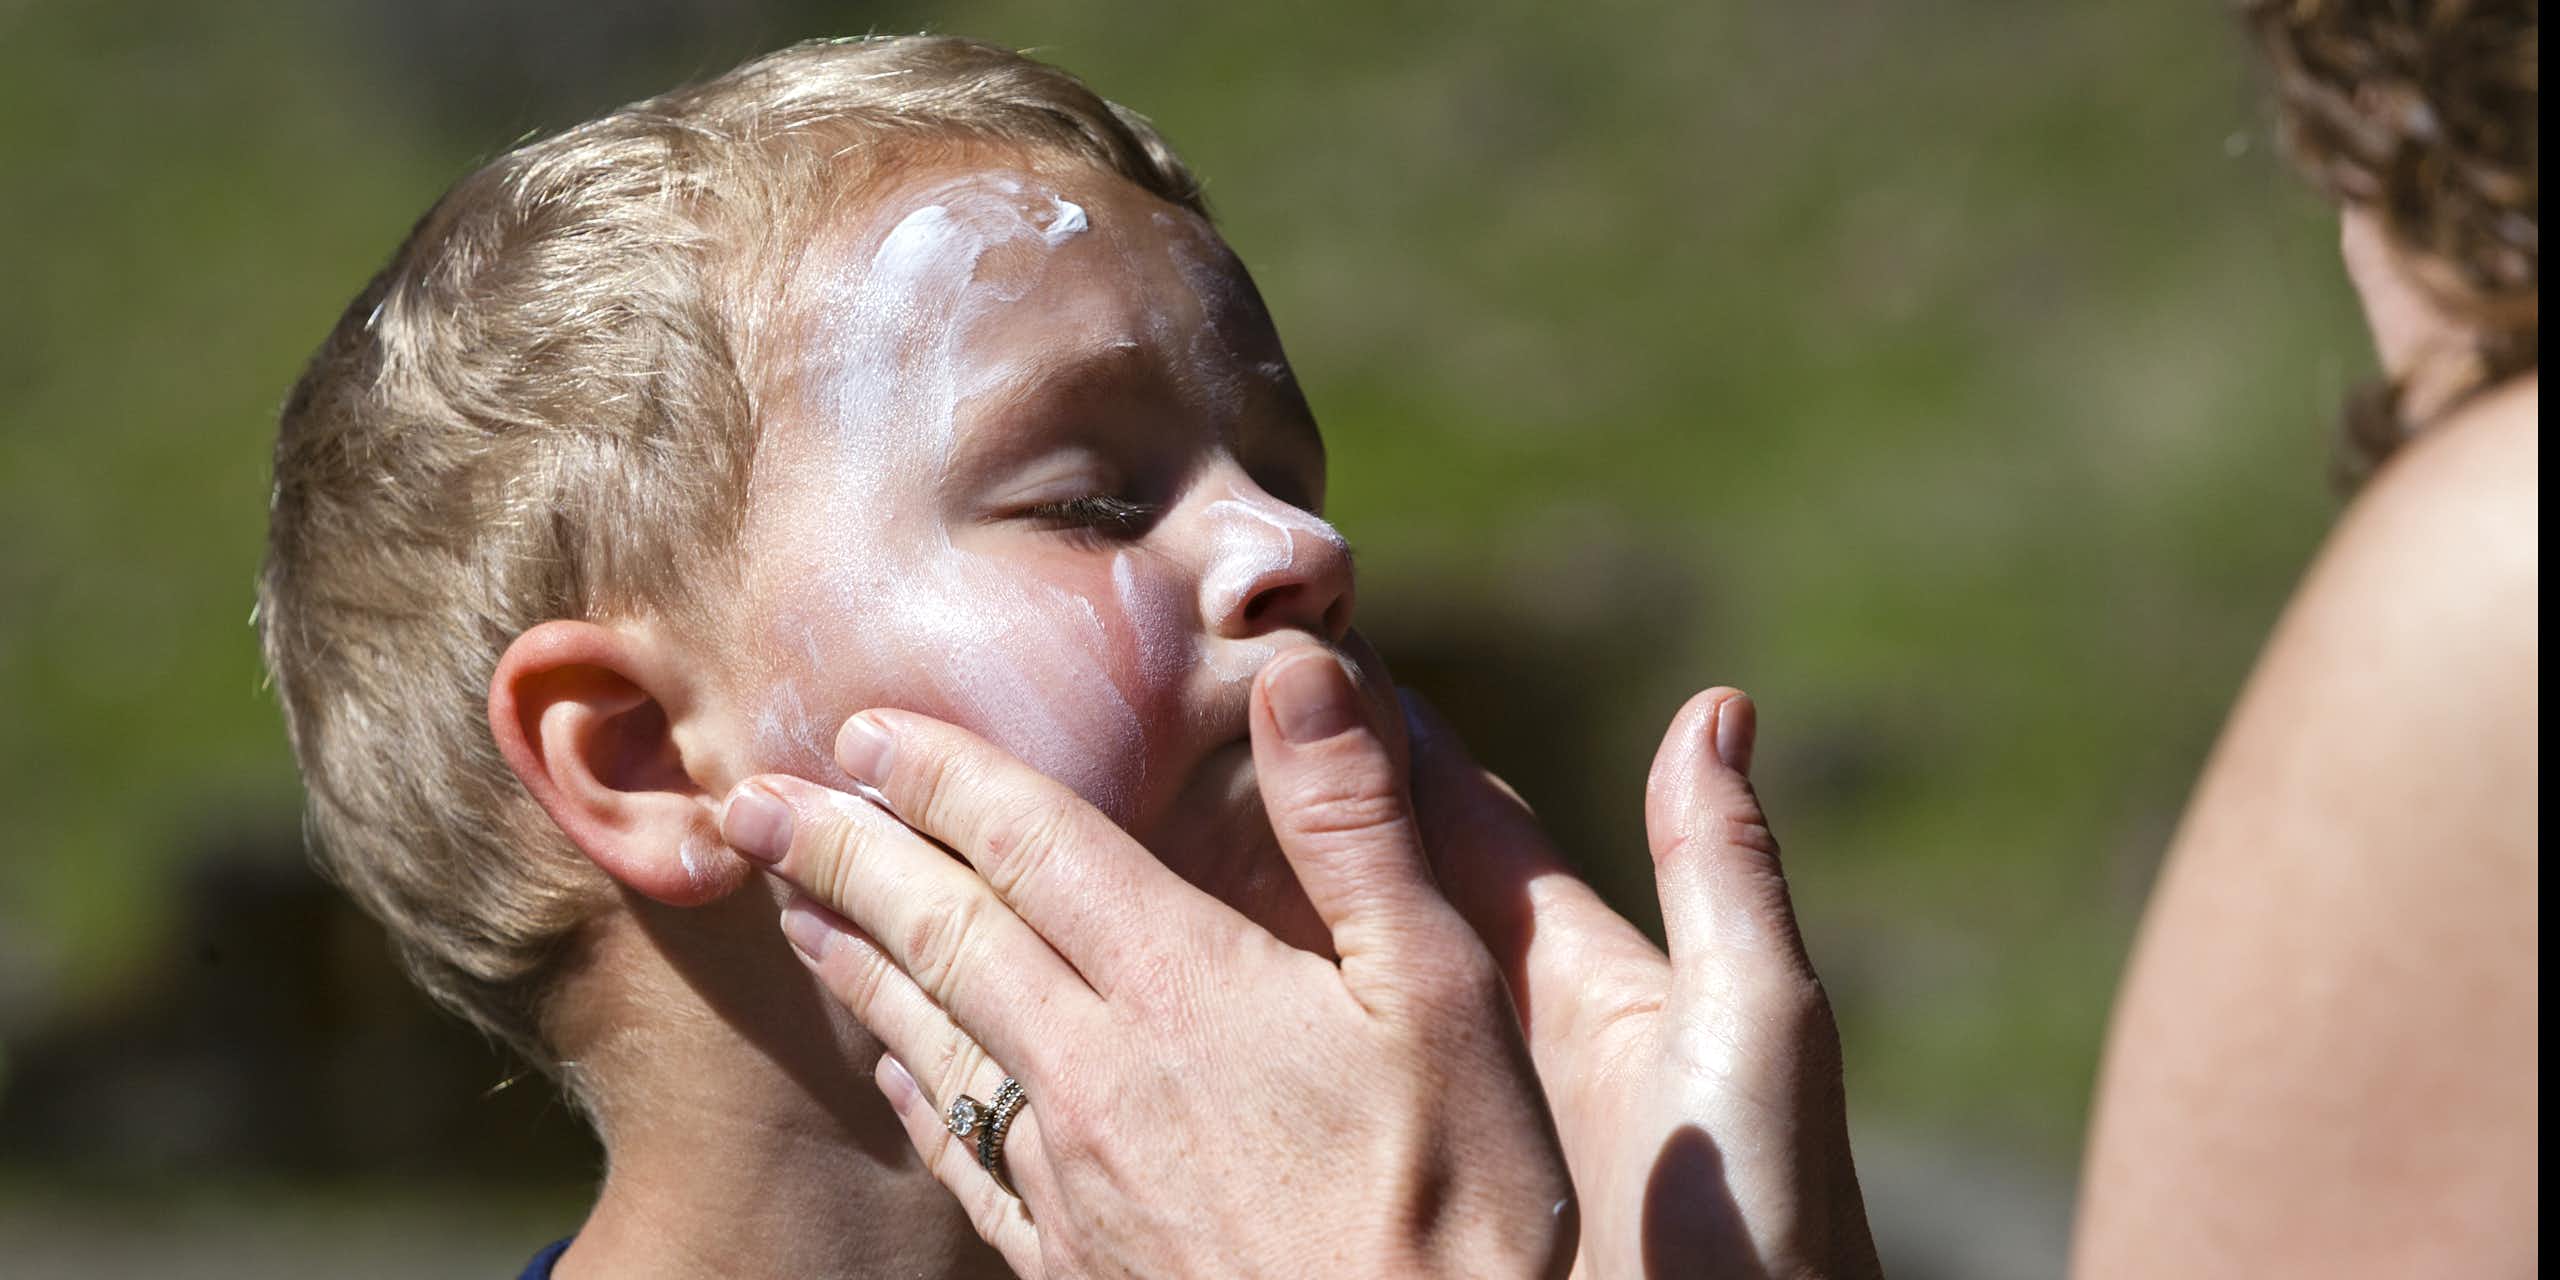 A young boy having sun cream applied to his face.